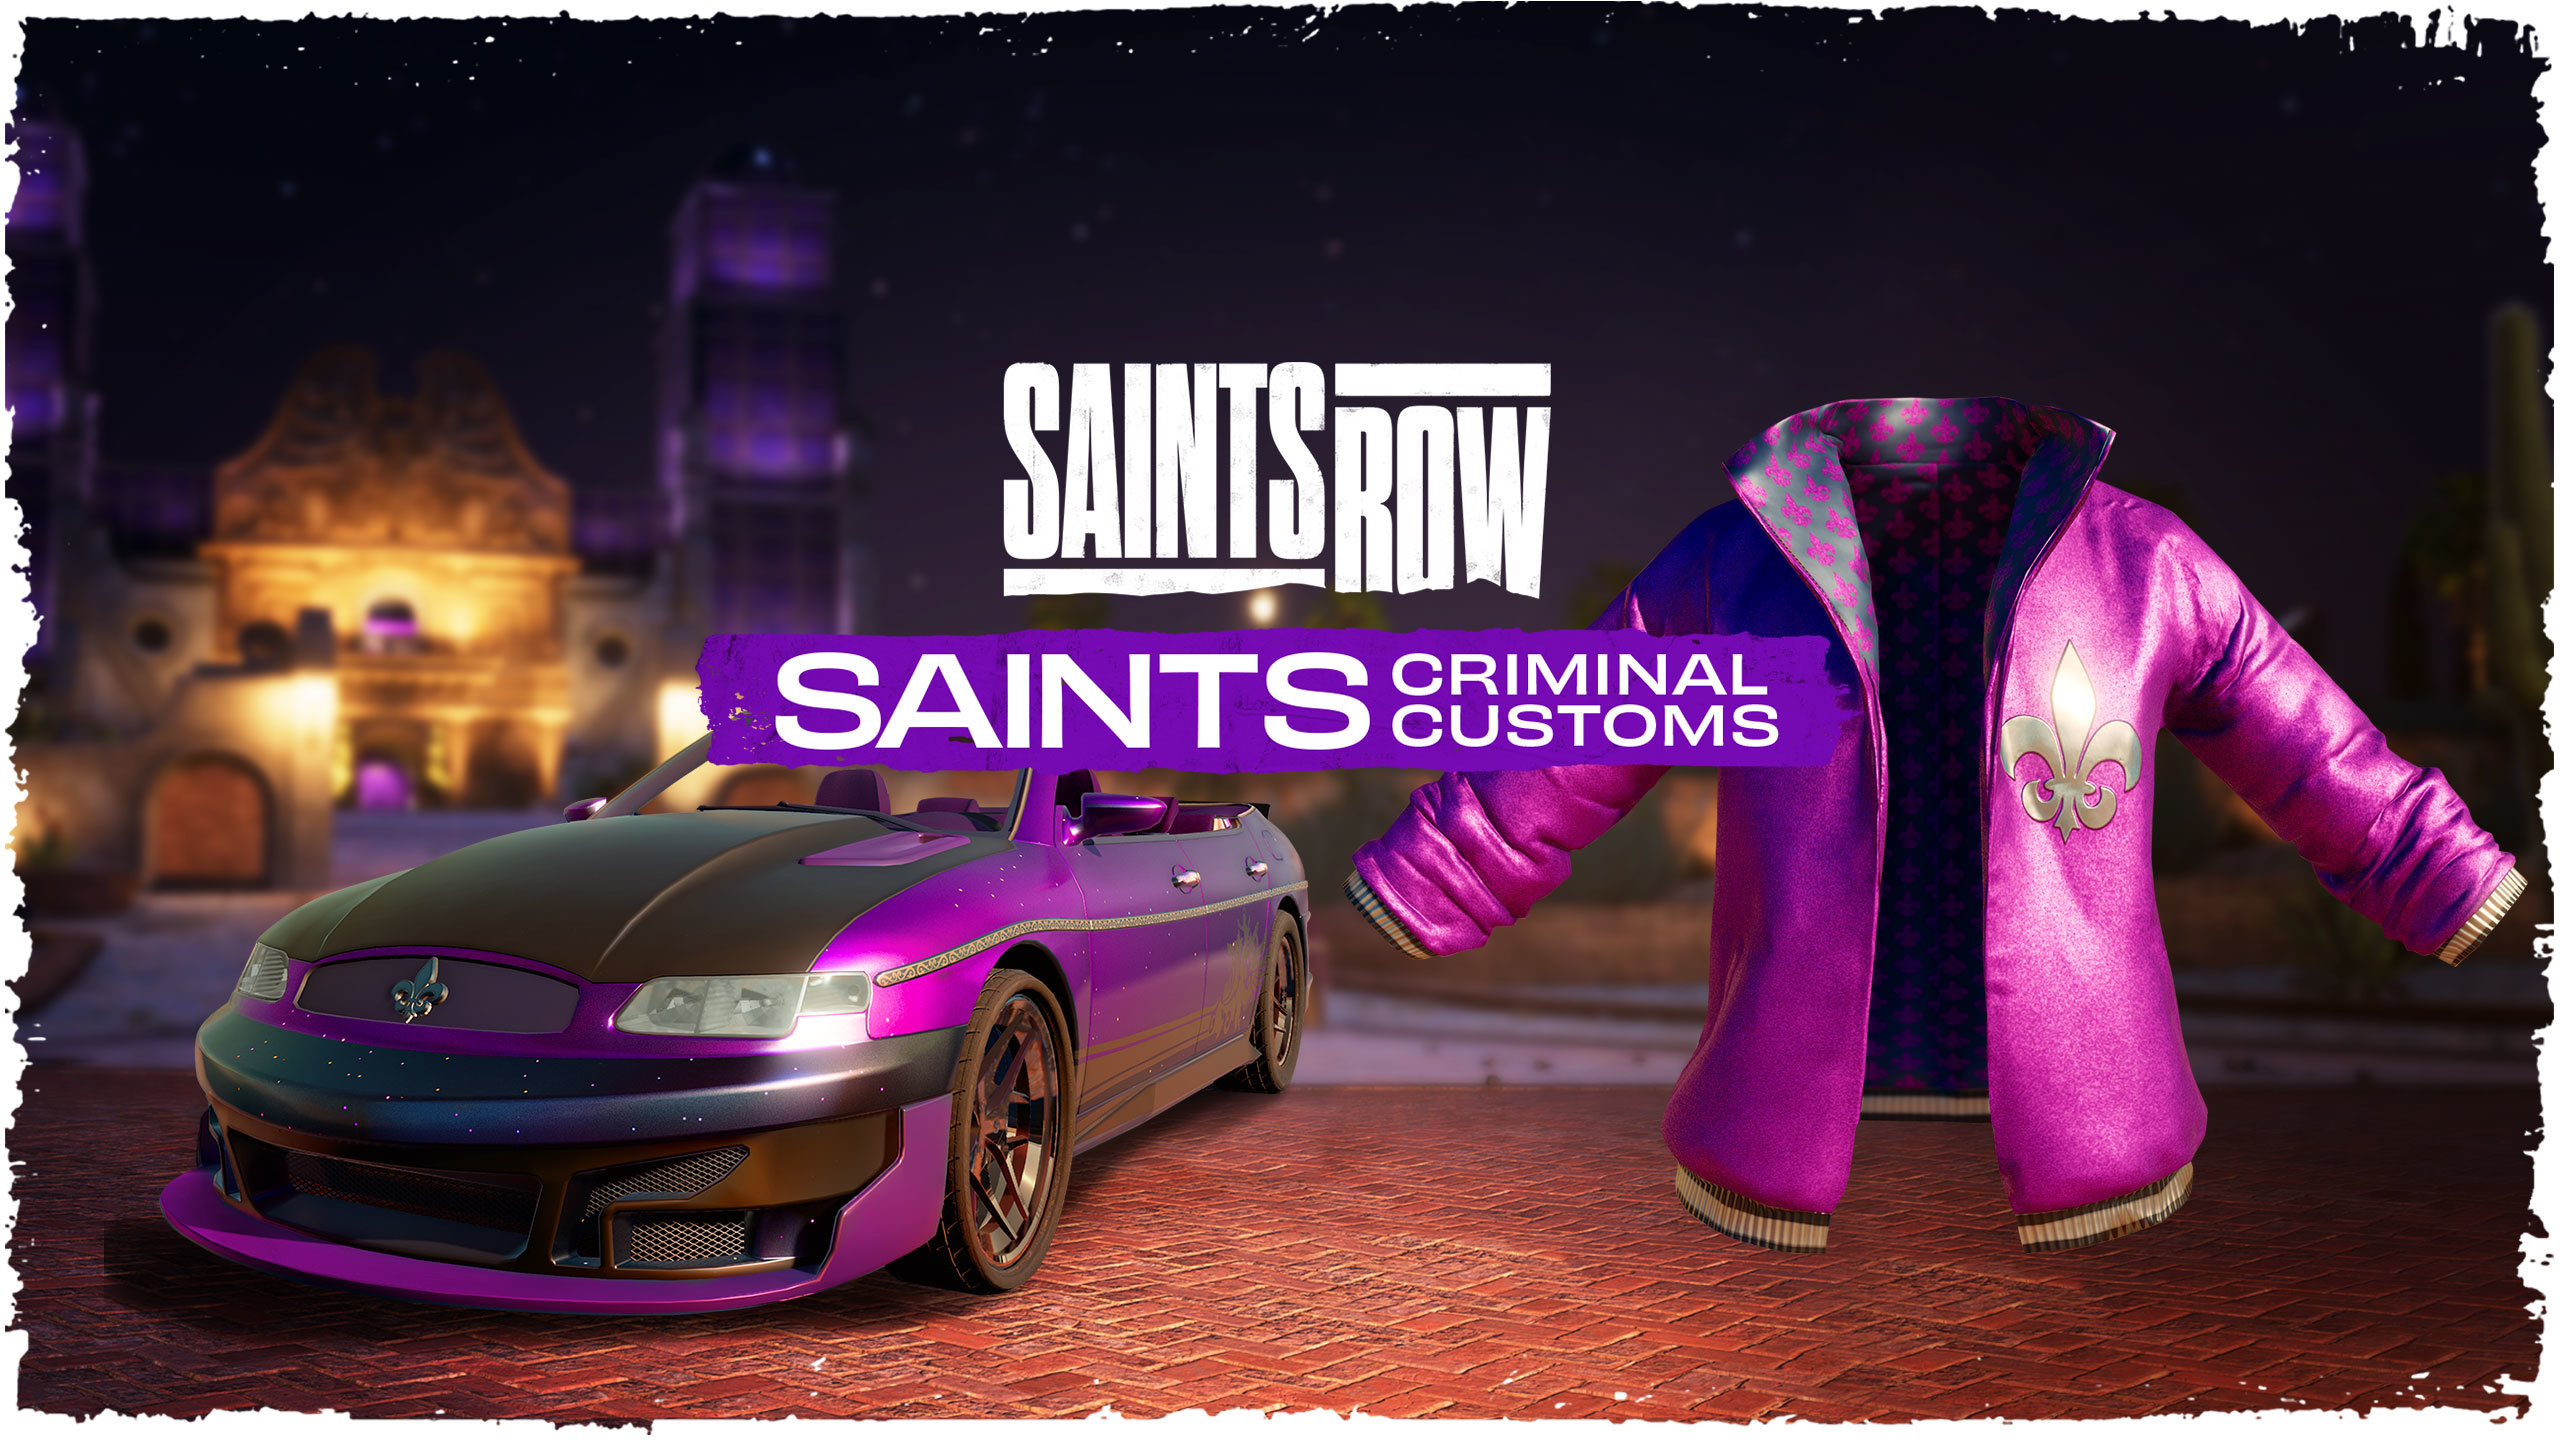 Saints Row Saints Criminal Customs Edition Epic Games CD Key 68.2 USD